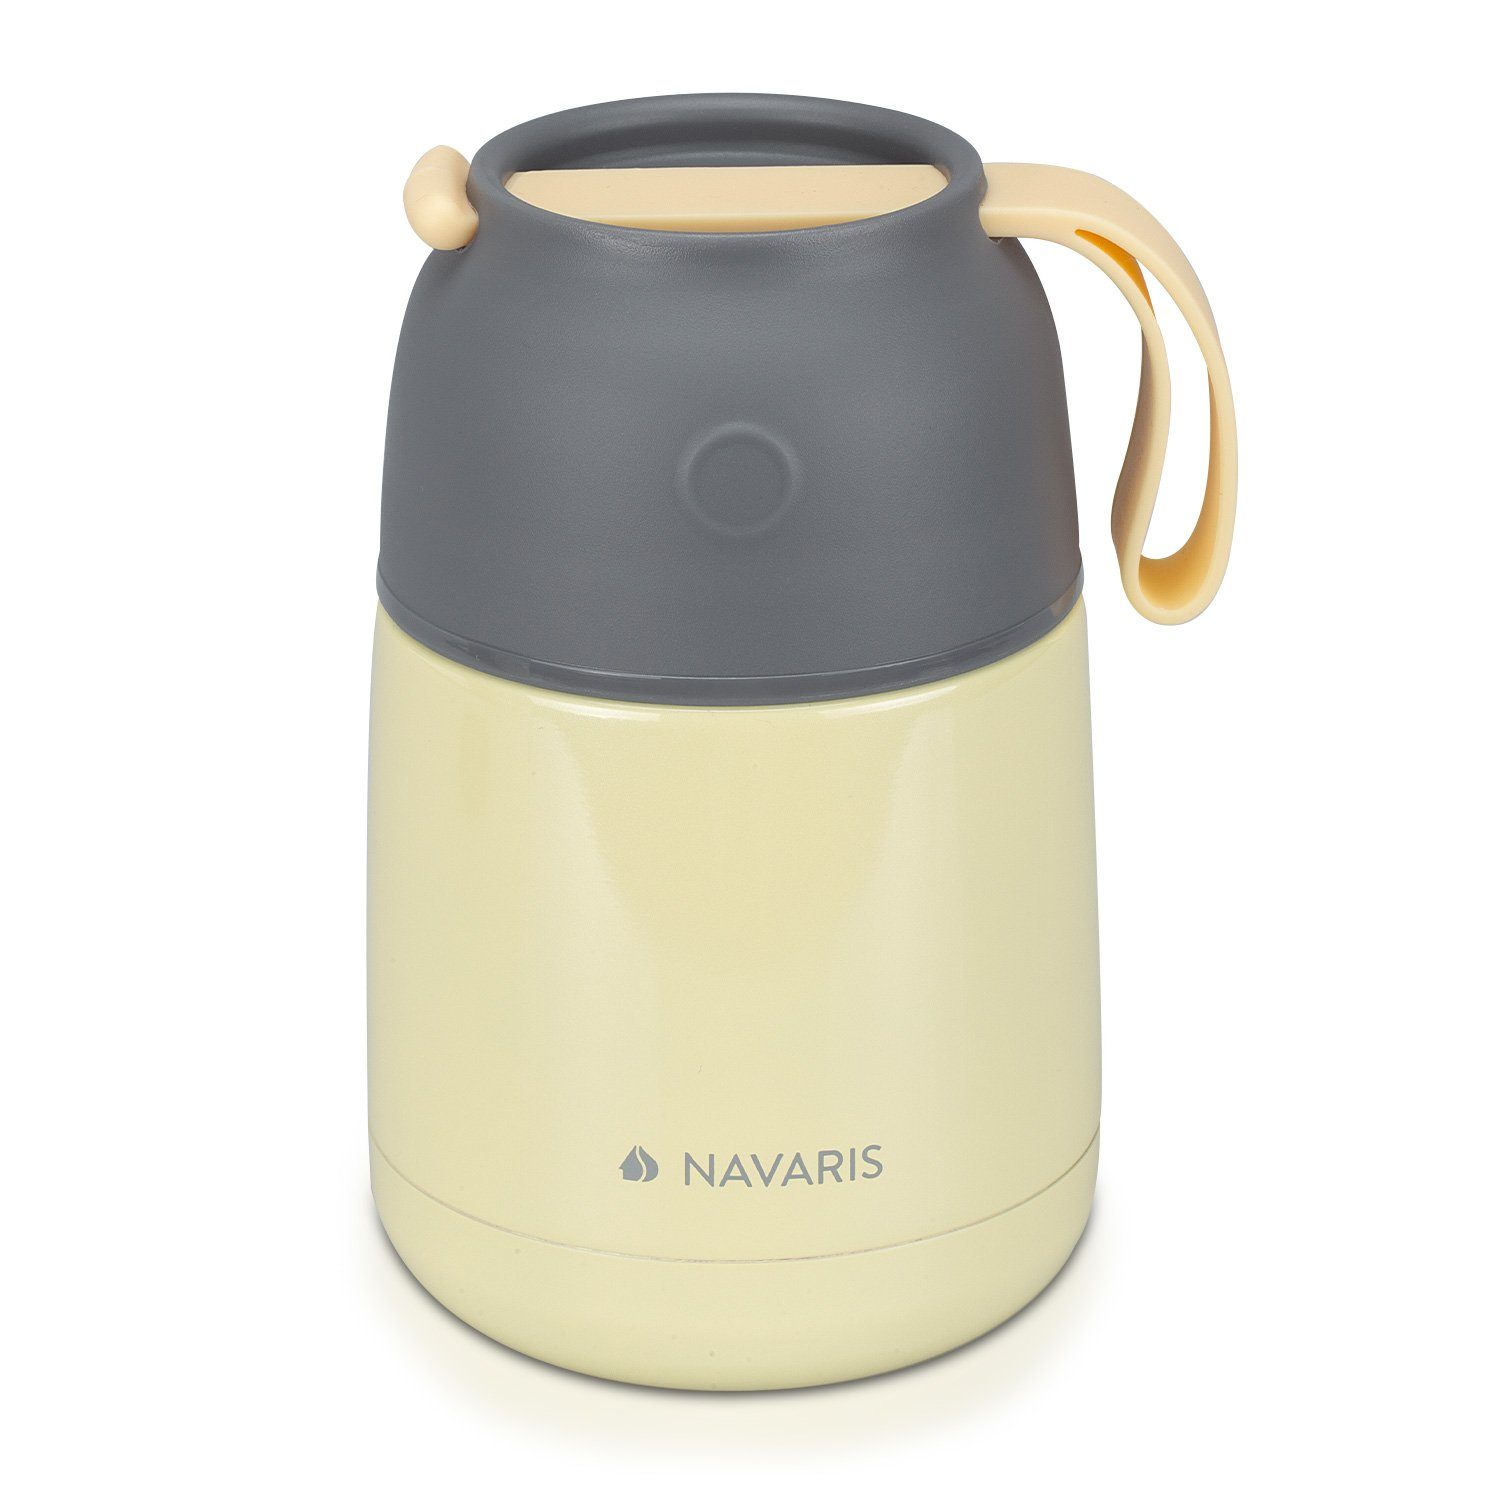 Navaris Thermobehälter 450ml Edelstahl Warmhaltebox für Essen & Babybrei - auslaufsicher, Edelstahl Gelb